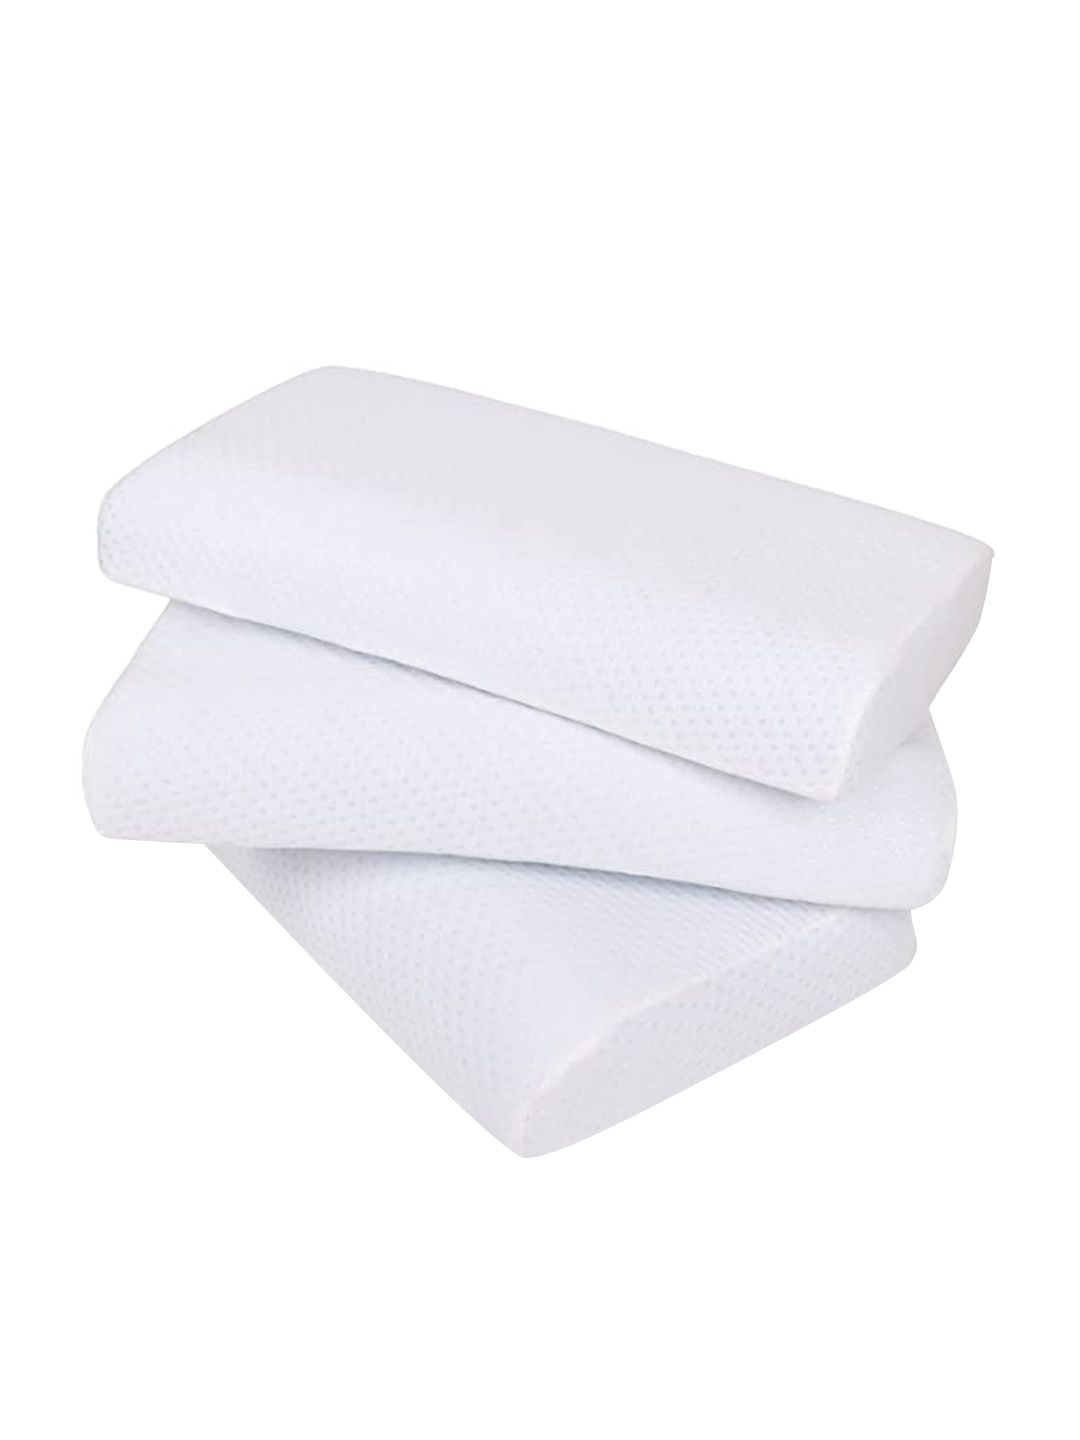 Sleepsia Set of 3  White Solid Cotton Therapedic Pillows Price in India